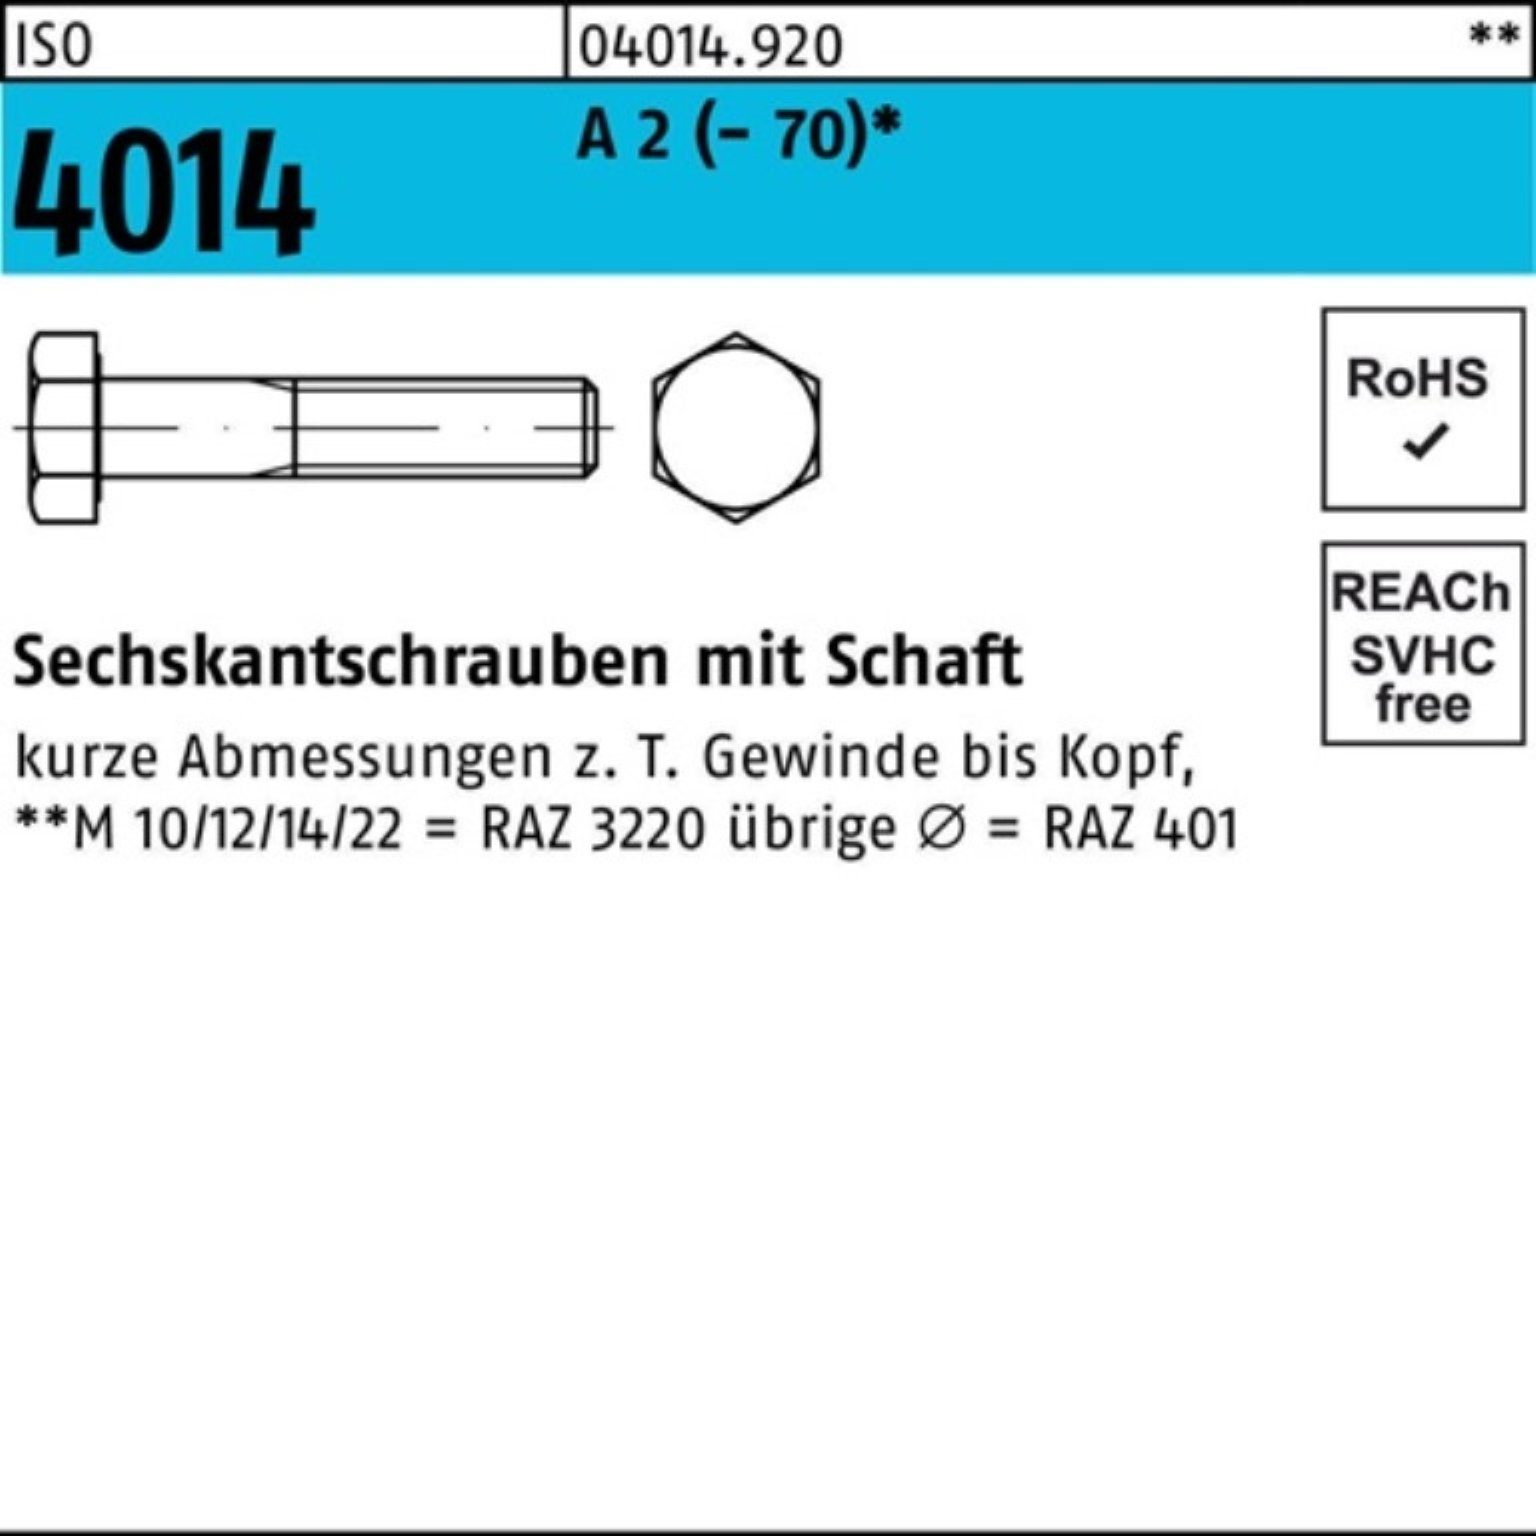 Bufab Sechskantschraube 100er Pack Sechskantschraube ISO 4014 Schaft M20x 140 A 2 (70) 1 St